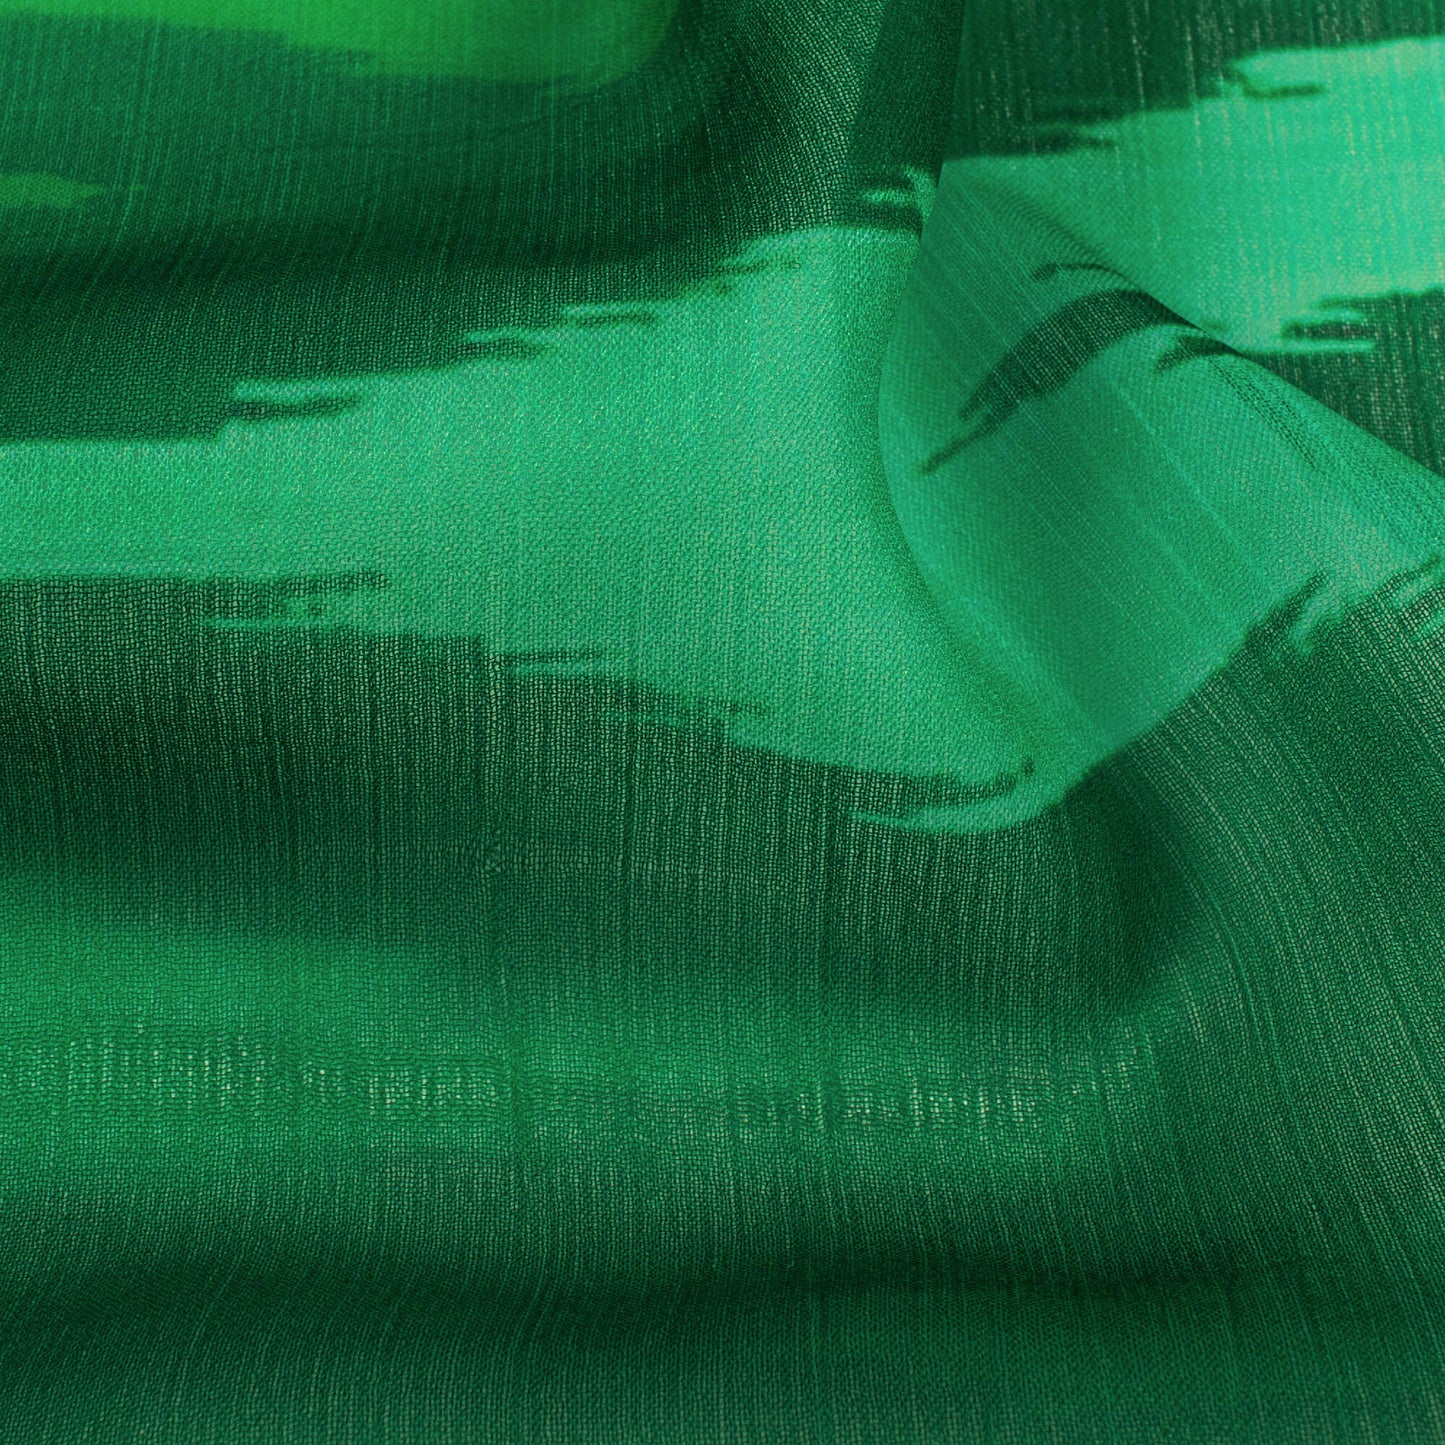 Bottle Green Ikat Pattern Digital Print Chiffon Fabric